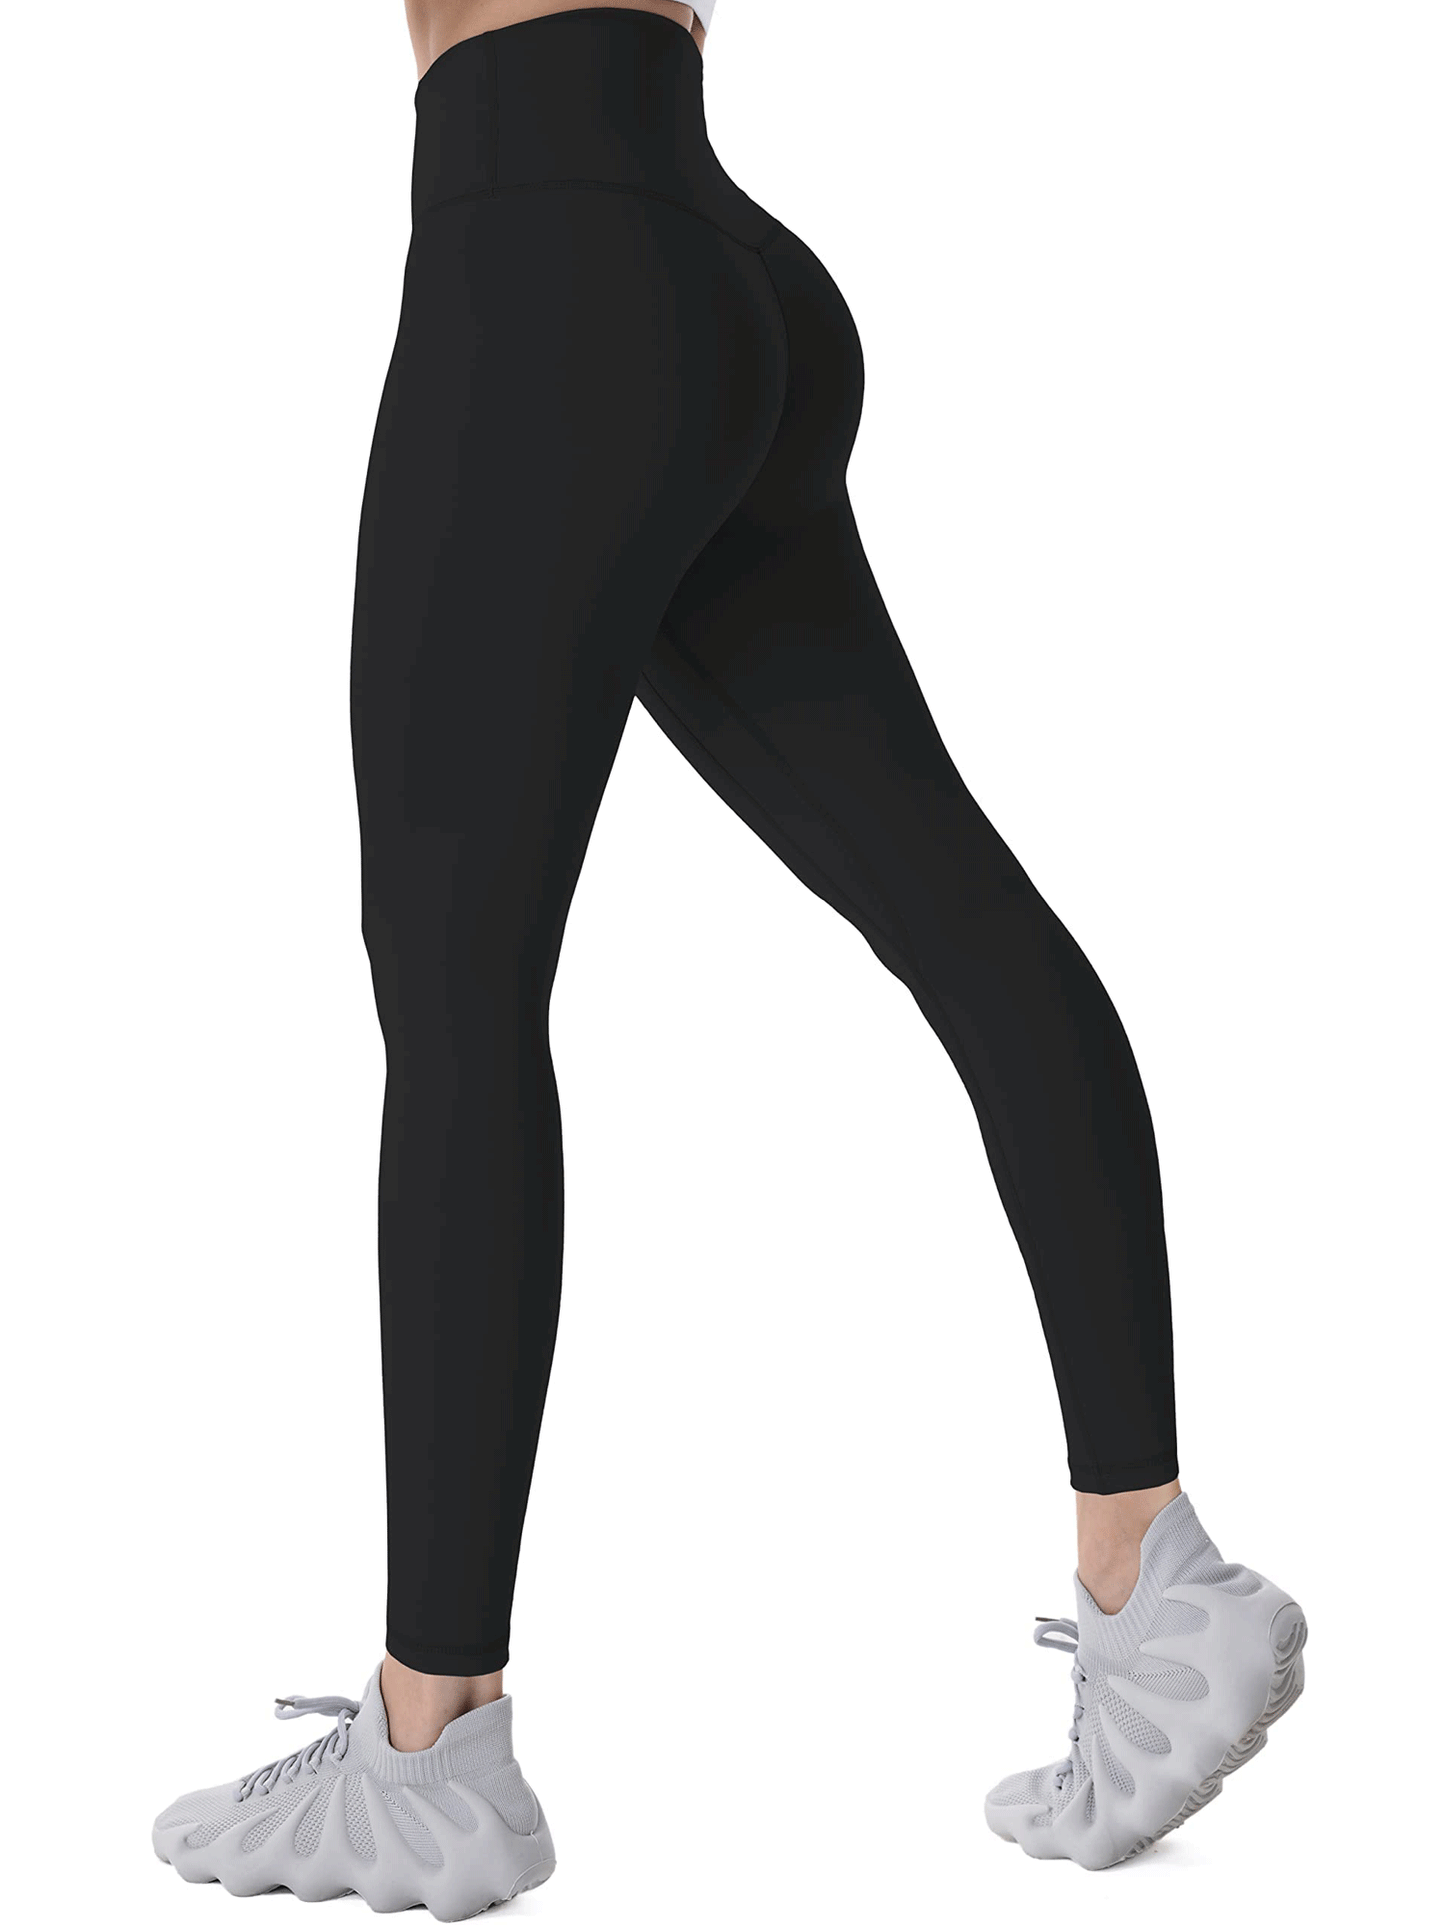 28”   Nylon Workout Leggings for Women